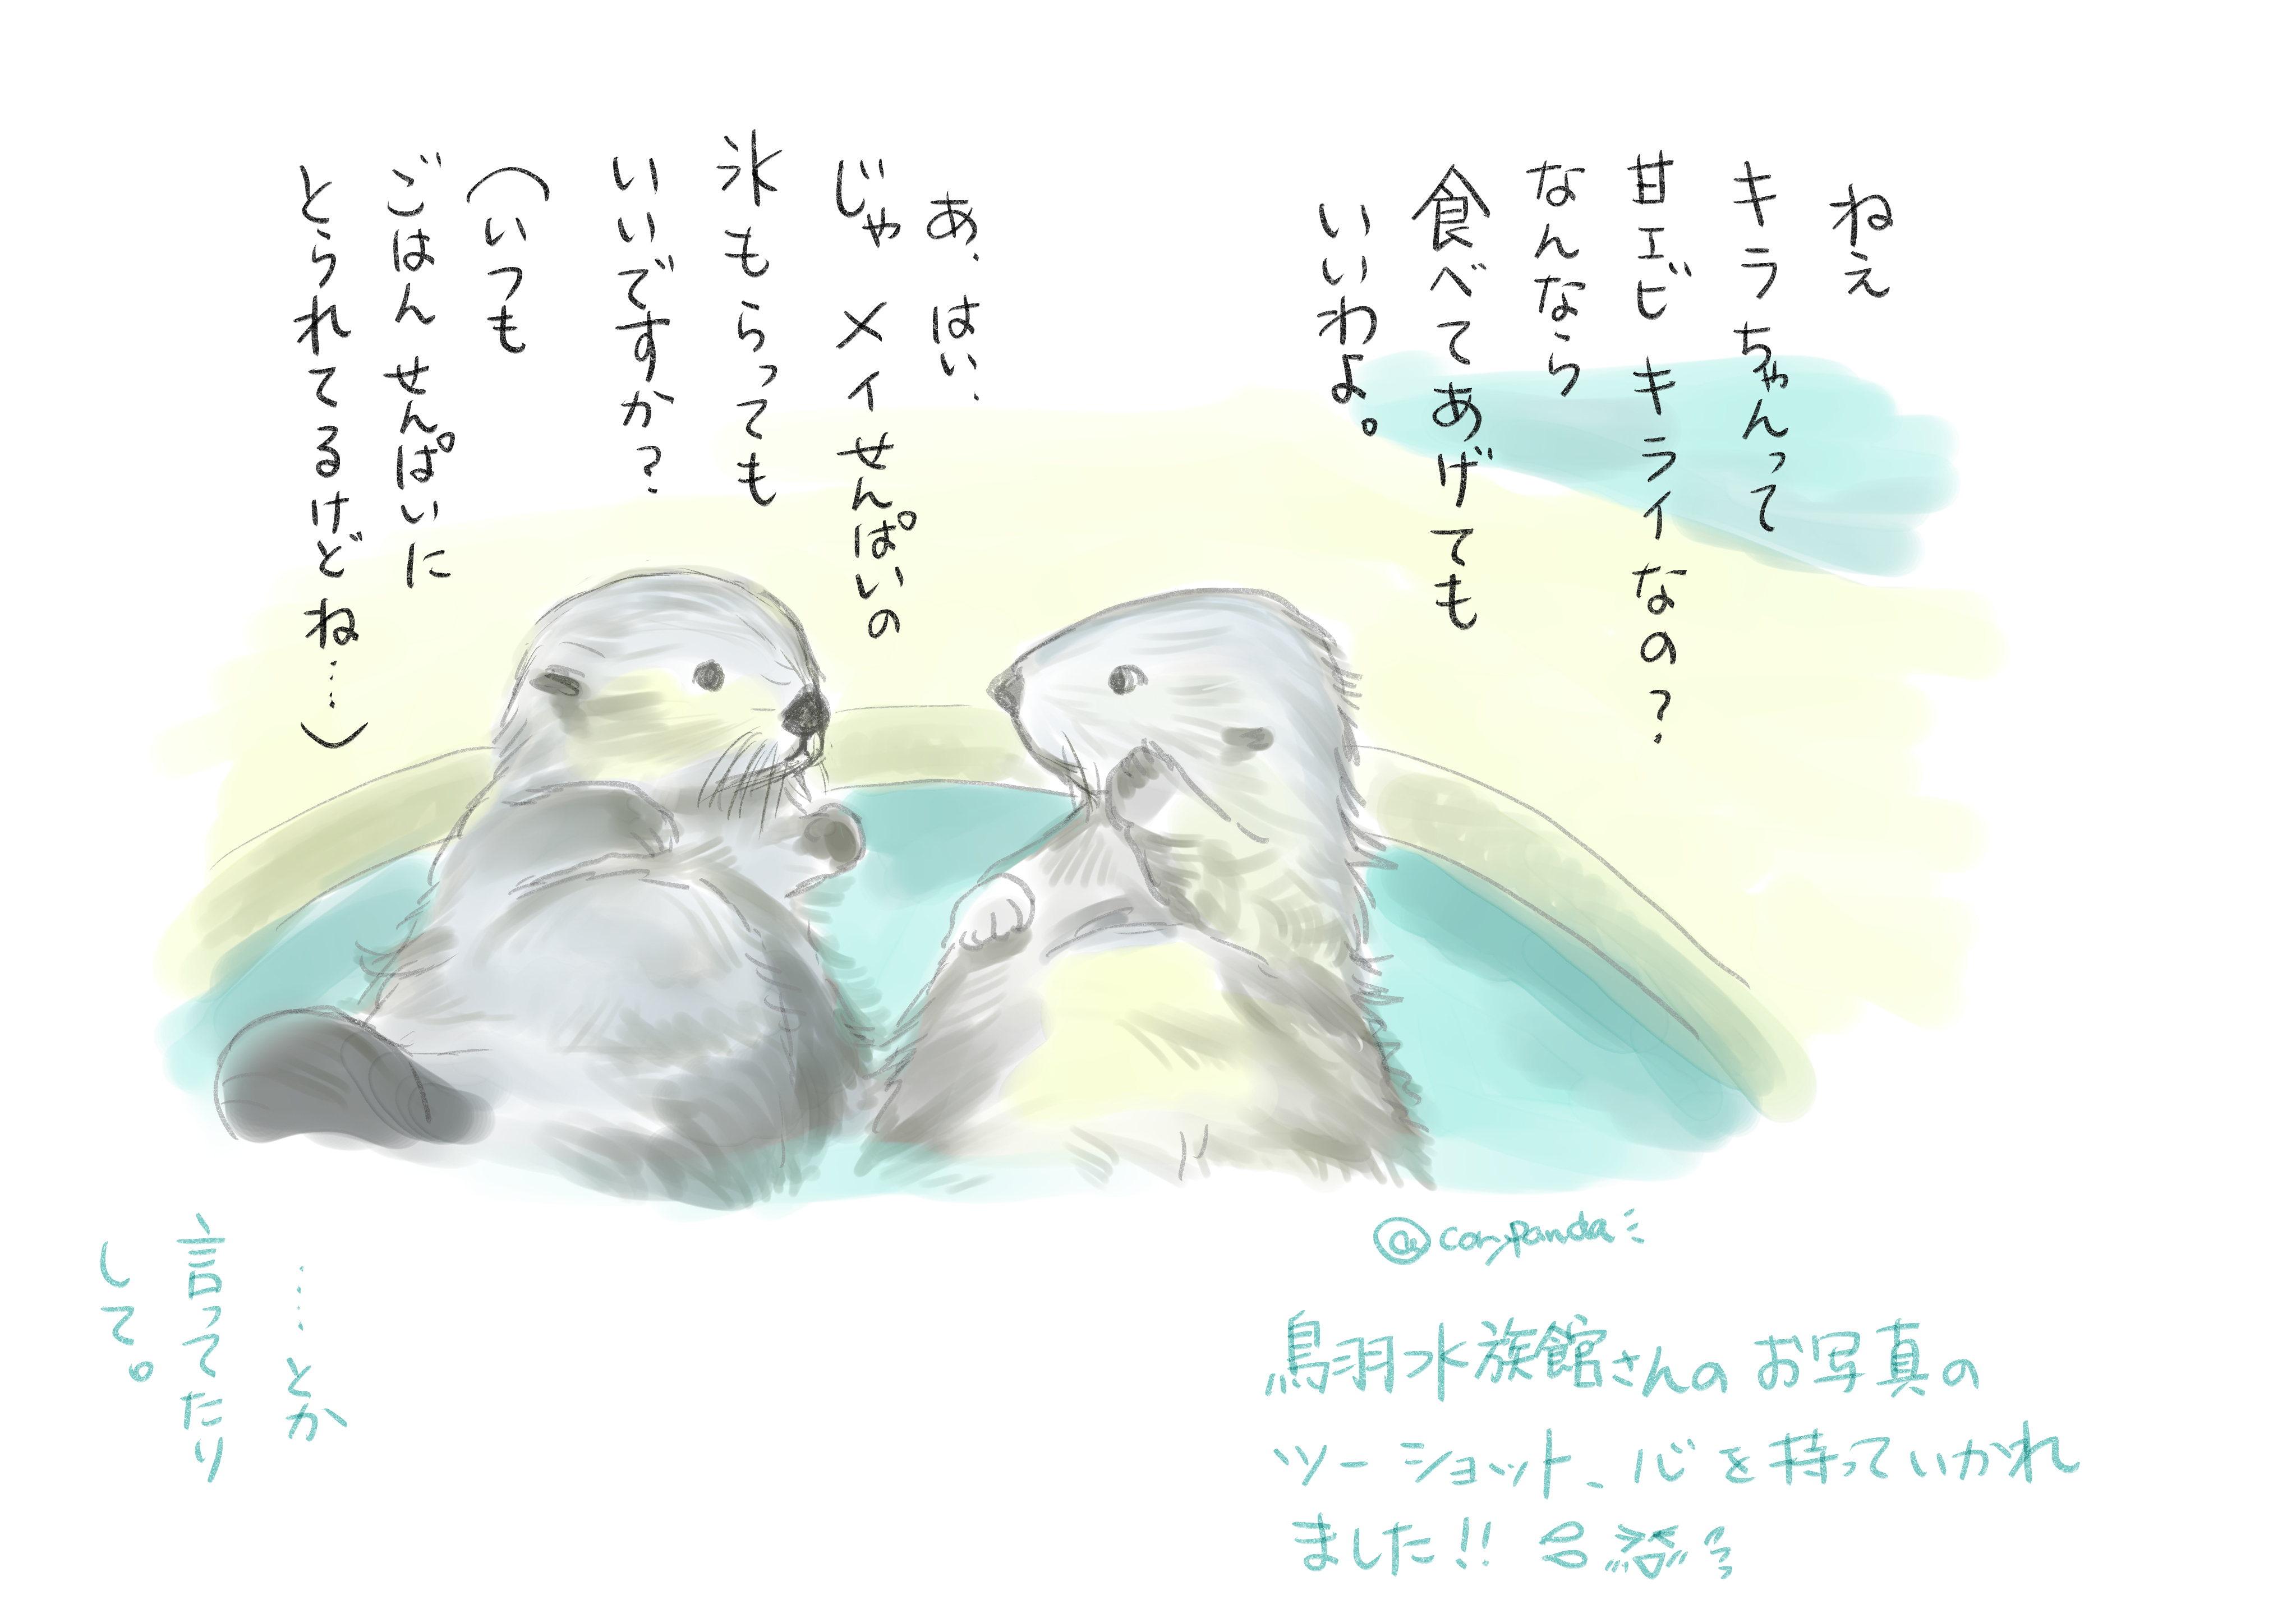 こりぱんだ 鳥羽水族館さんのキラちゃんとメイちゃんのツーショット写真が可愛すぎて どんなお話してるのかなぁと想像しちゃいました ラッコ キラ メイ イラスト 鳥羽水族館 T Co 0mzwio381o Twitter